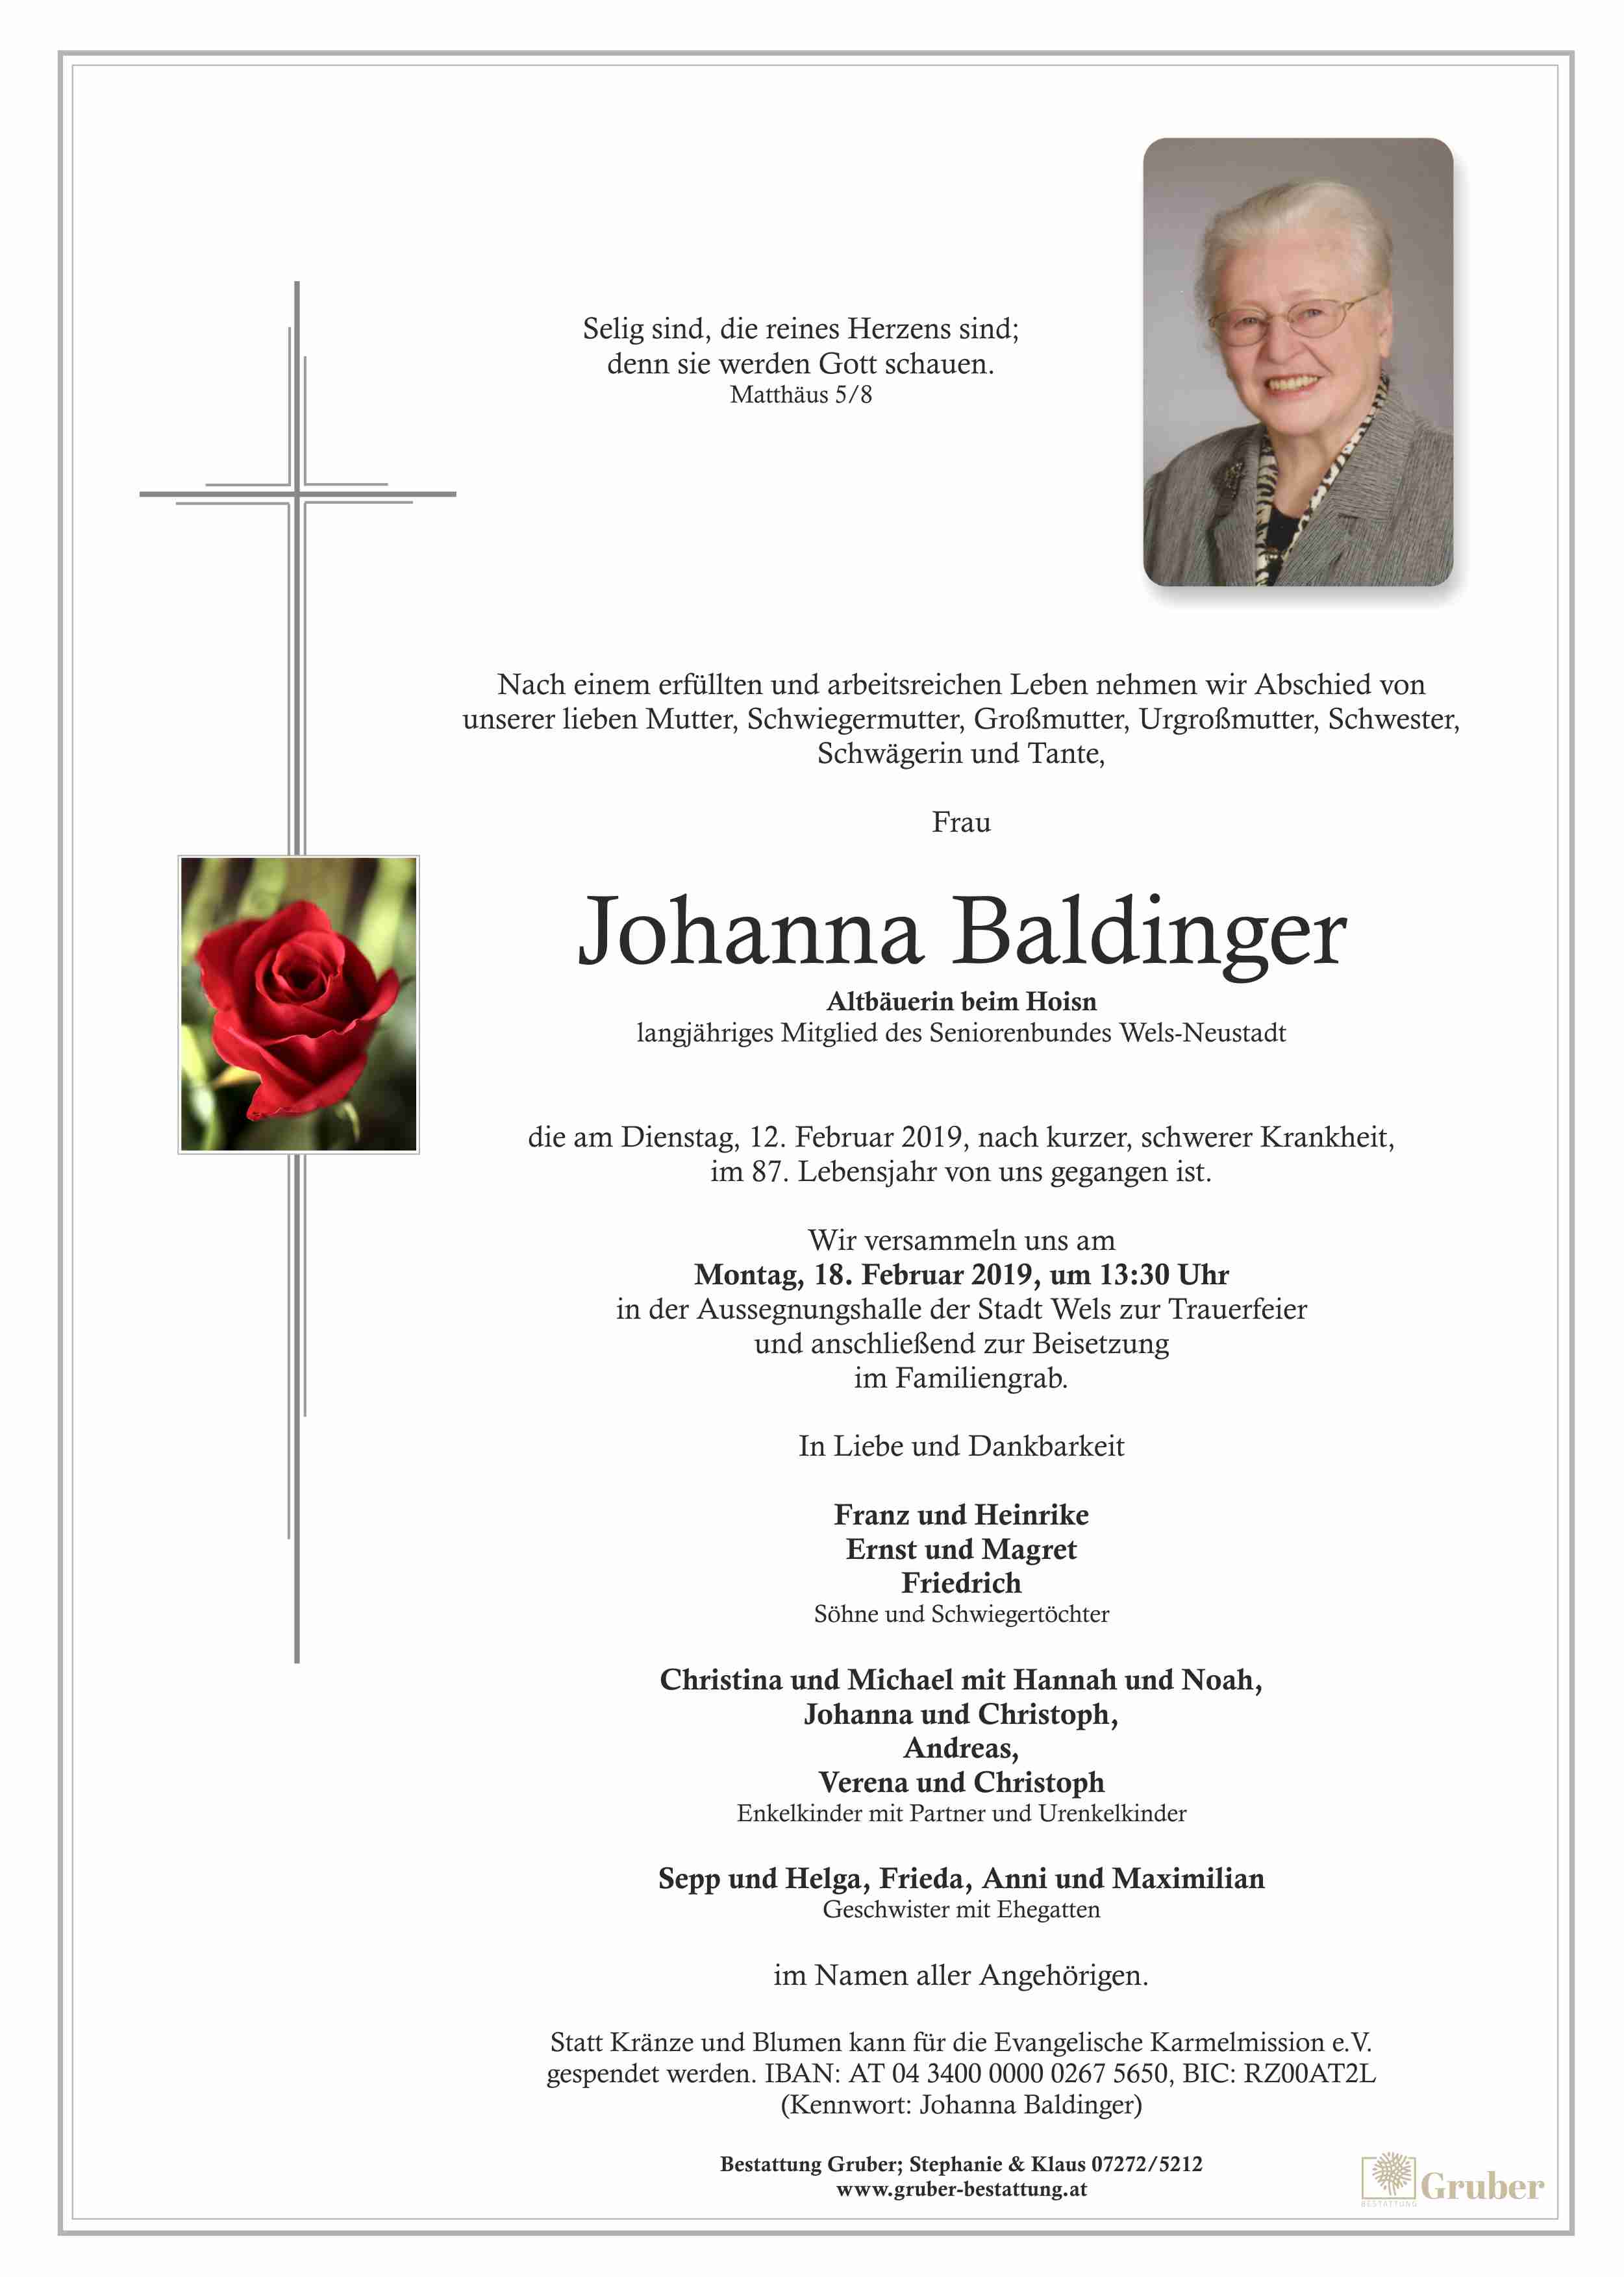 Johanna Baldinger (Wels)